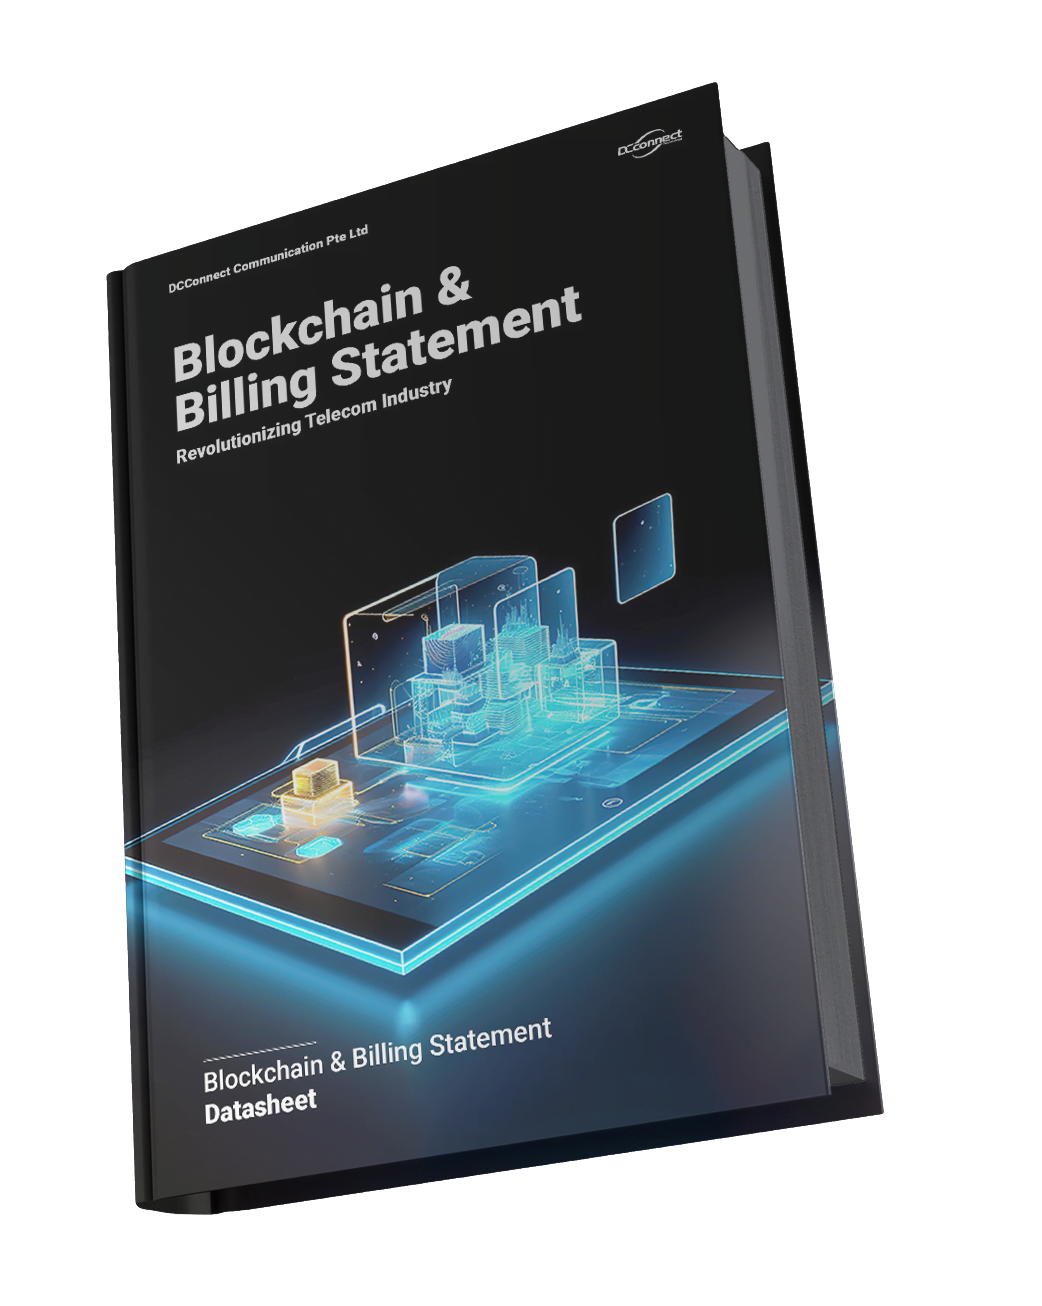 Blockchain & Billing Statement